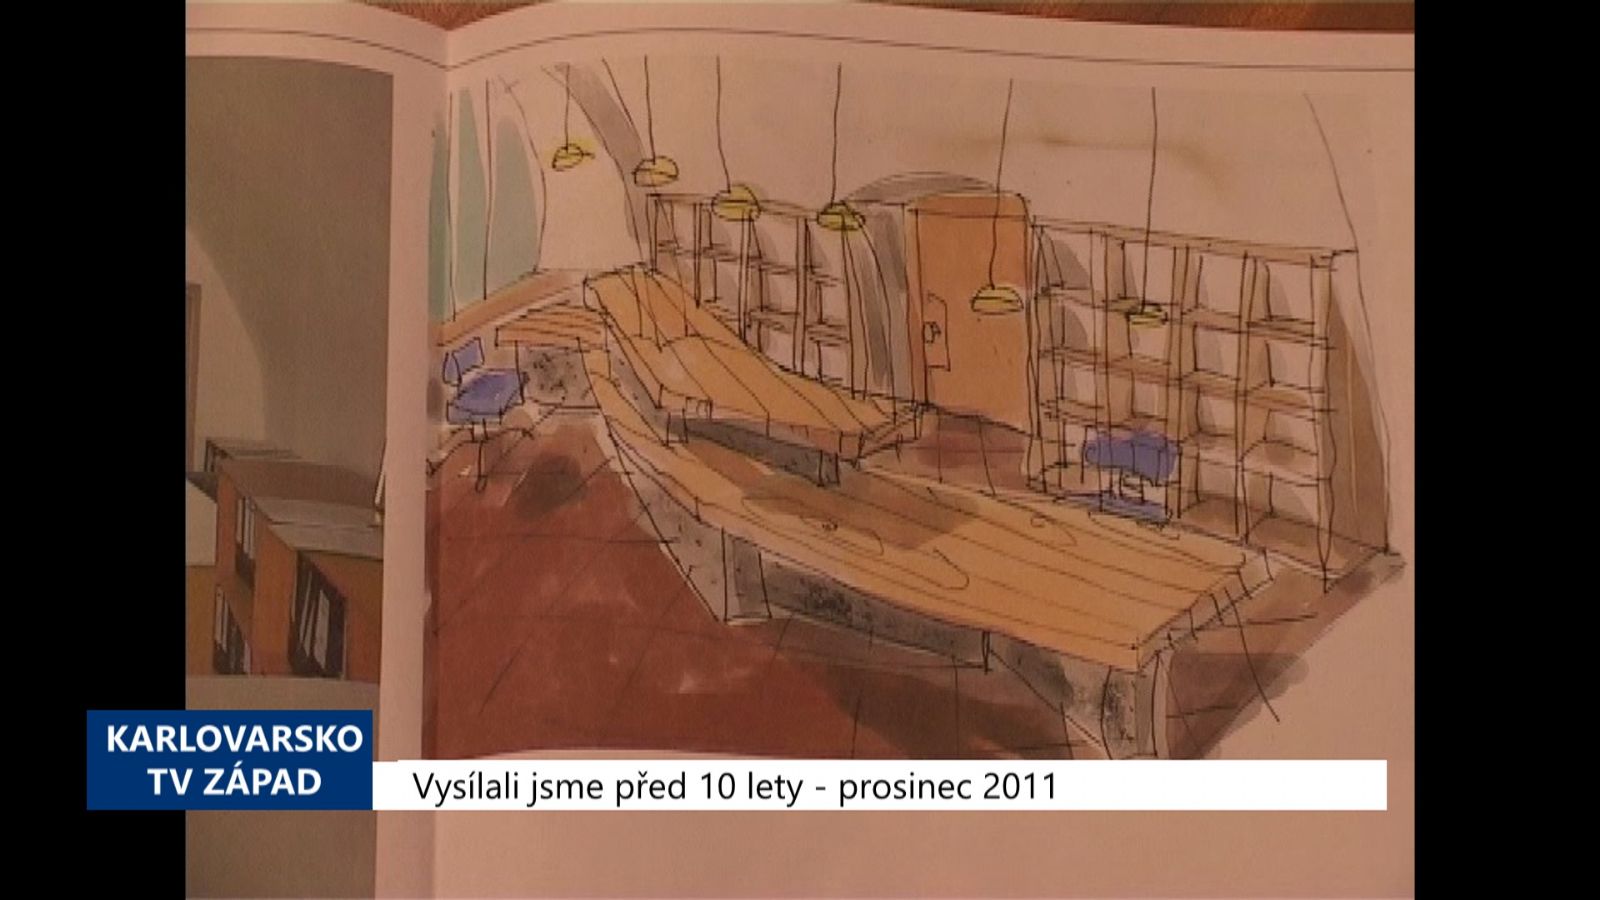 2011 – Cheb: Rekonstrukce recepce odhalí staré fresky (4542) (TV Západ)